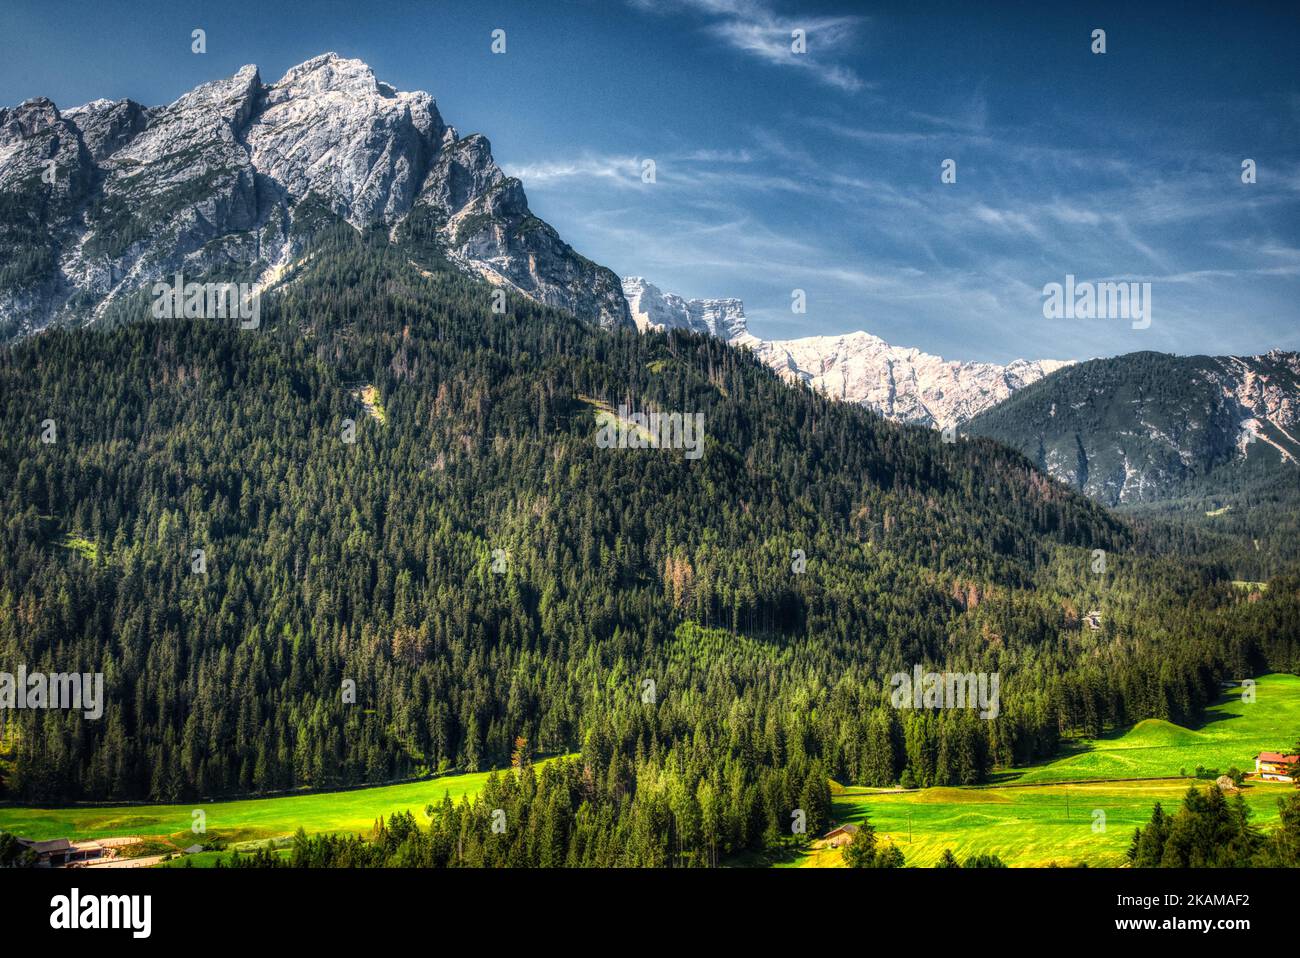 Monte Sasso del Signore mit der Croda del Becco im Hintergrund, vor dem Hintergrund des Waldes des Prags-Tals. HDR-Bild Stockfoto